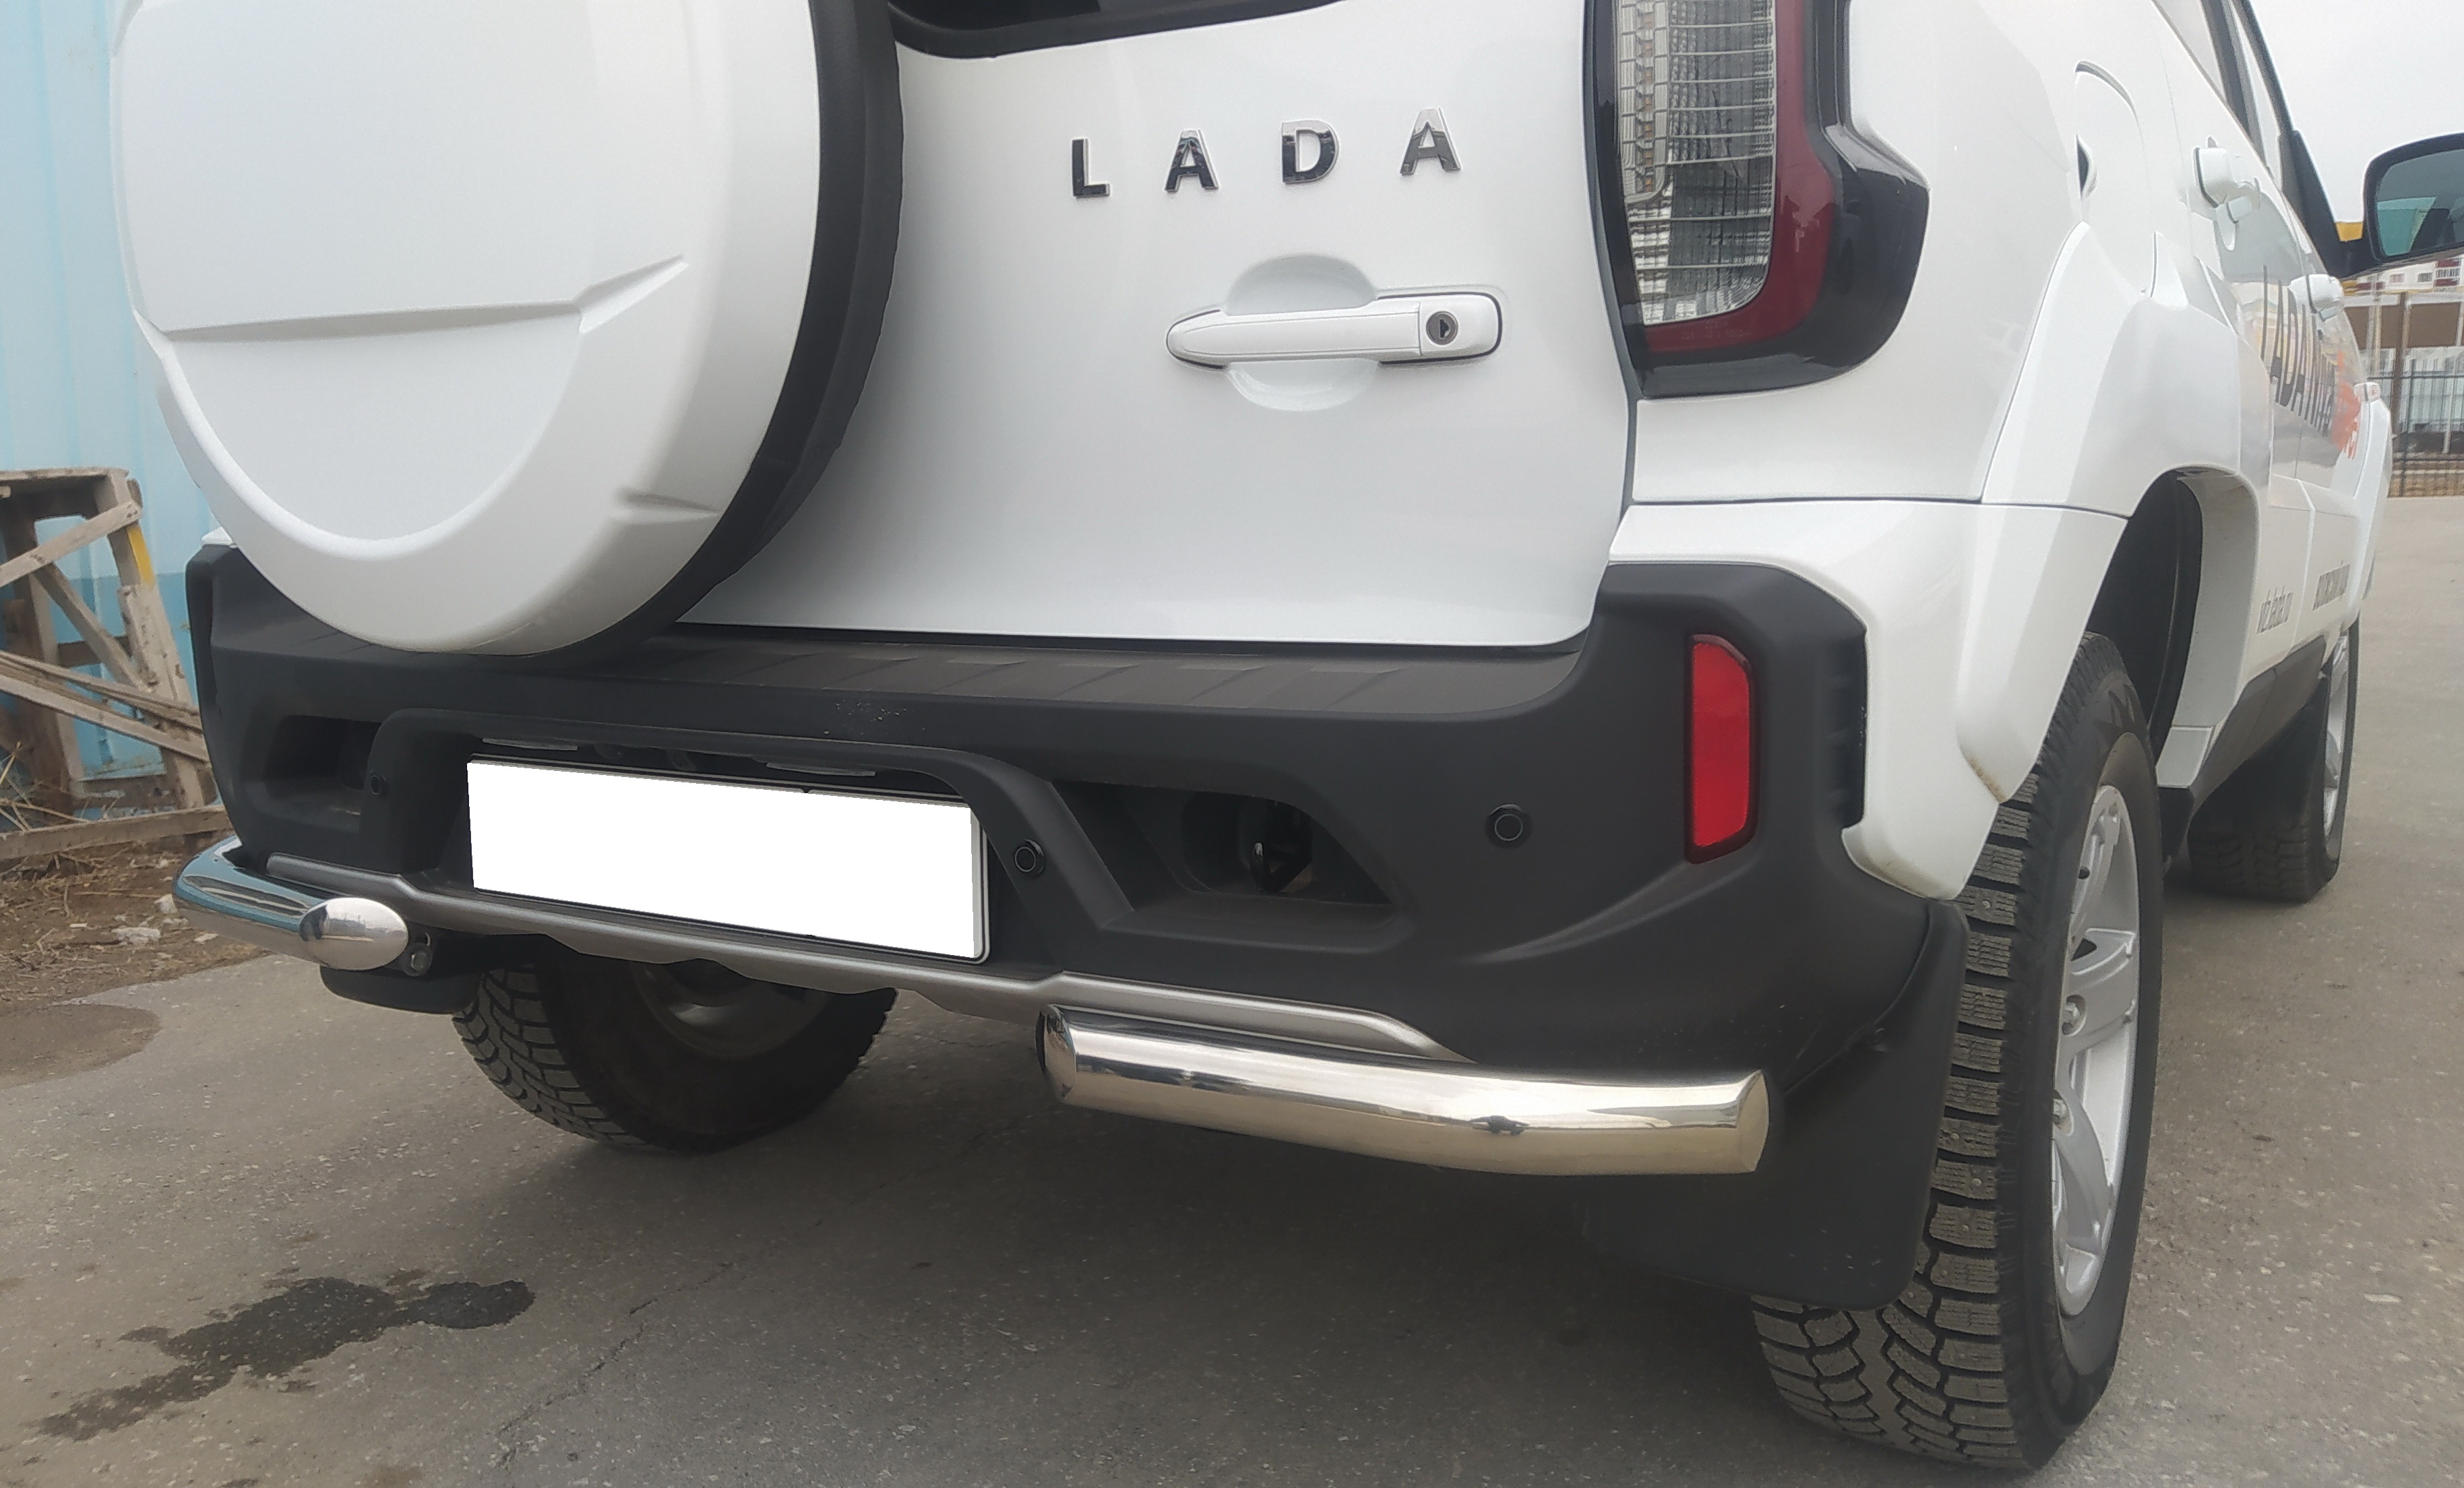 Защита заднего бампера угловая для автомобиля LADA (ВАЗ) Niva Travel 2021 арт. NVT.21.17